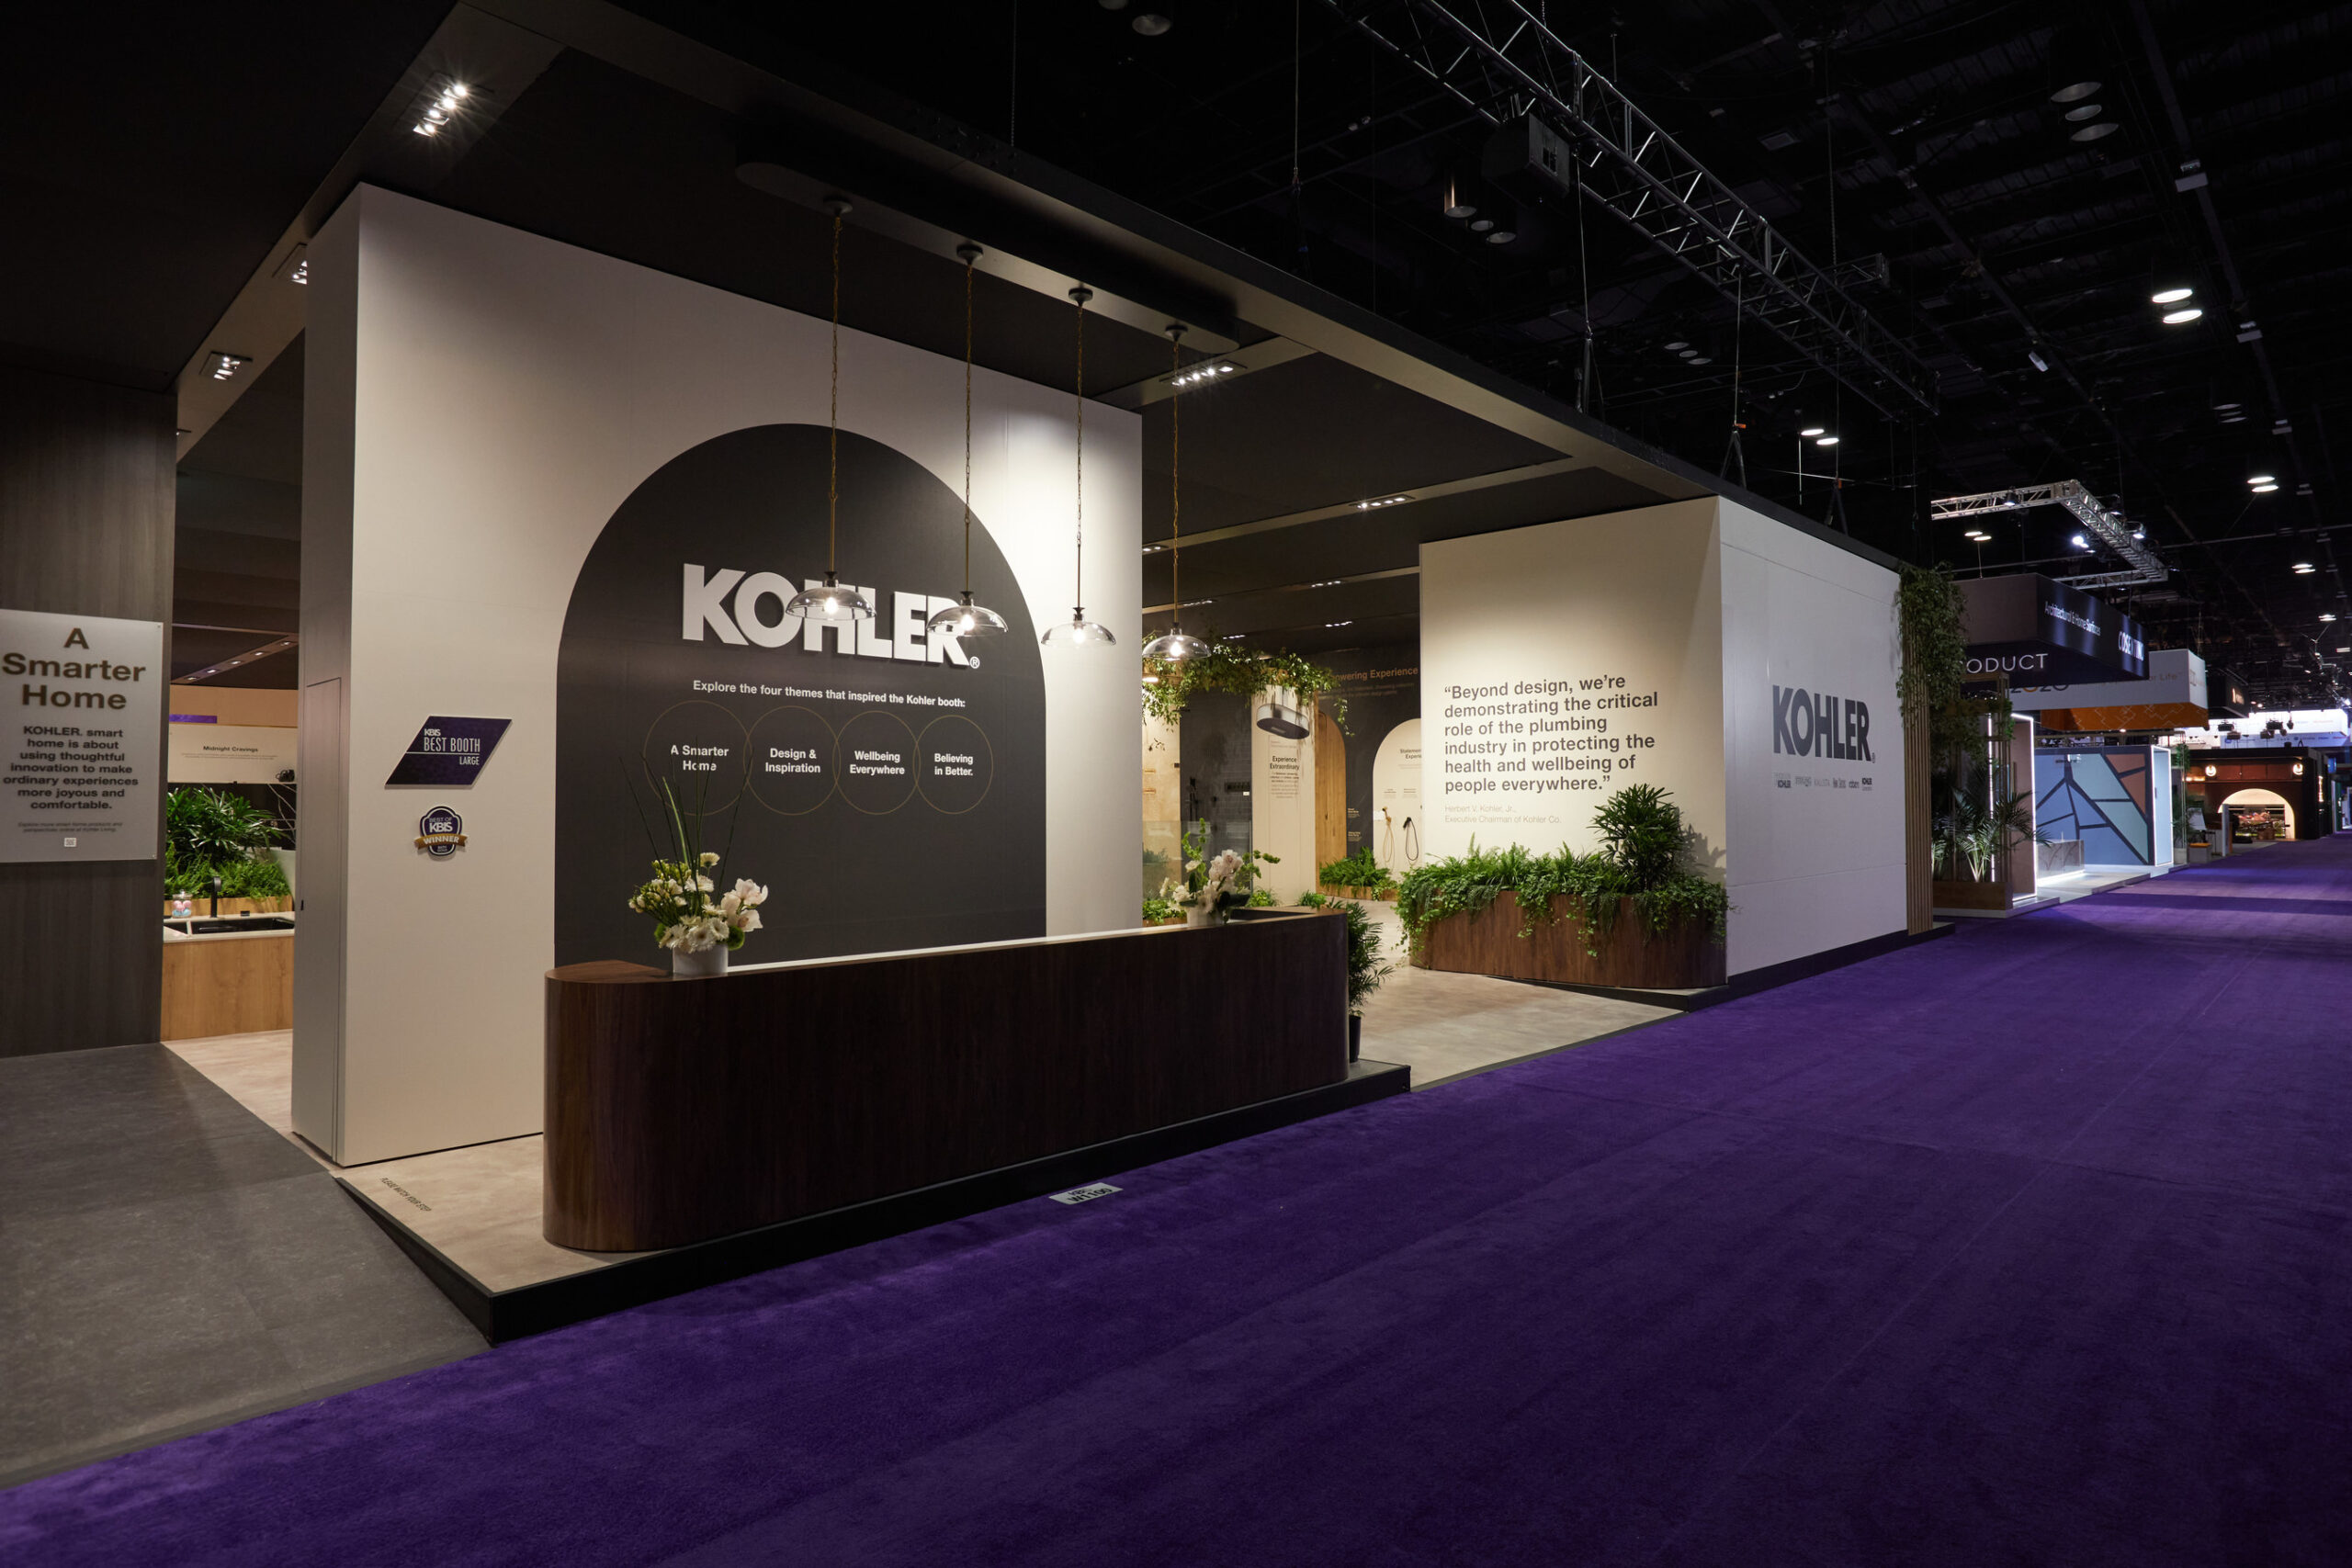 Kohler Co. Wins Best of KBIS, Best Booth Large, NKBA Chairman’s Award and Crystal Vision Awards. Pictured is Kohler’s booth, showcasing products from Kohler brands: KOHLER, KALLISTA, Robern, ANN SACKS, KOHLER Lighting and Sterling as well as KOHLER Power.